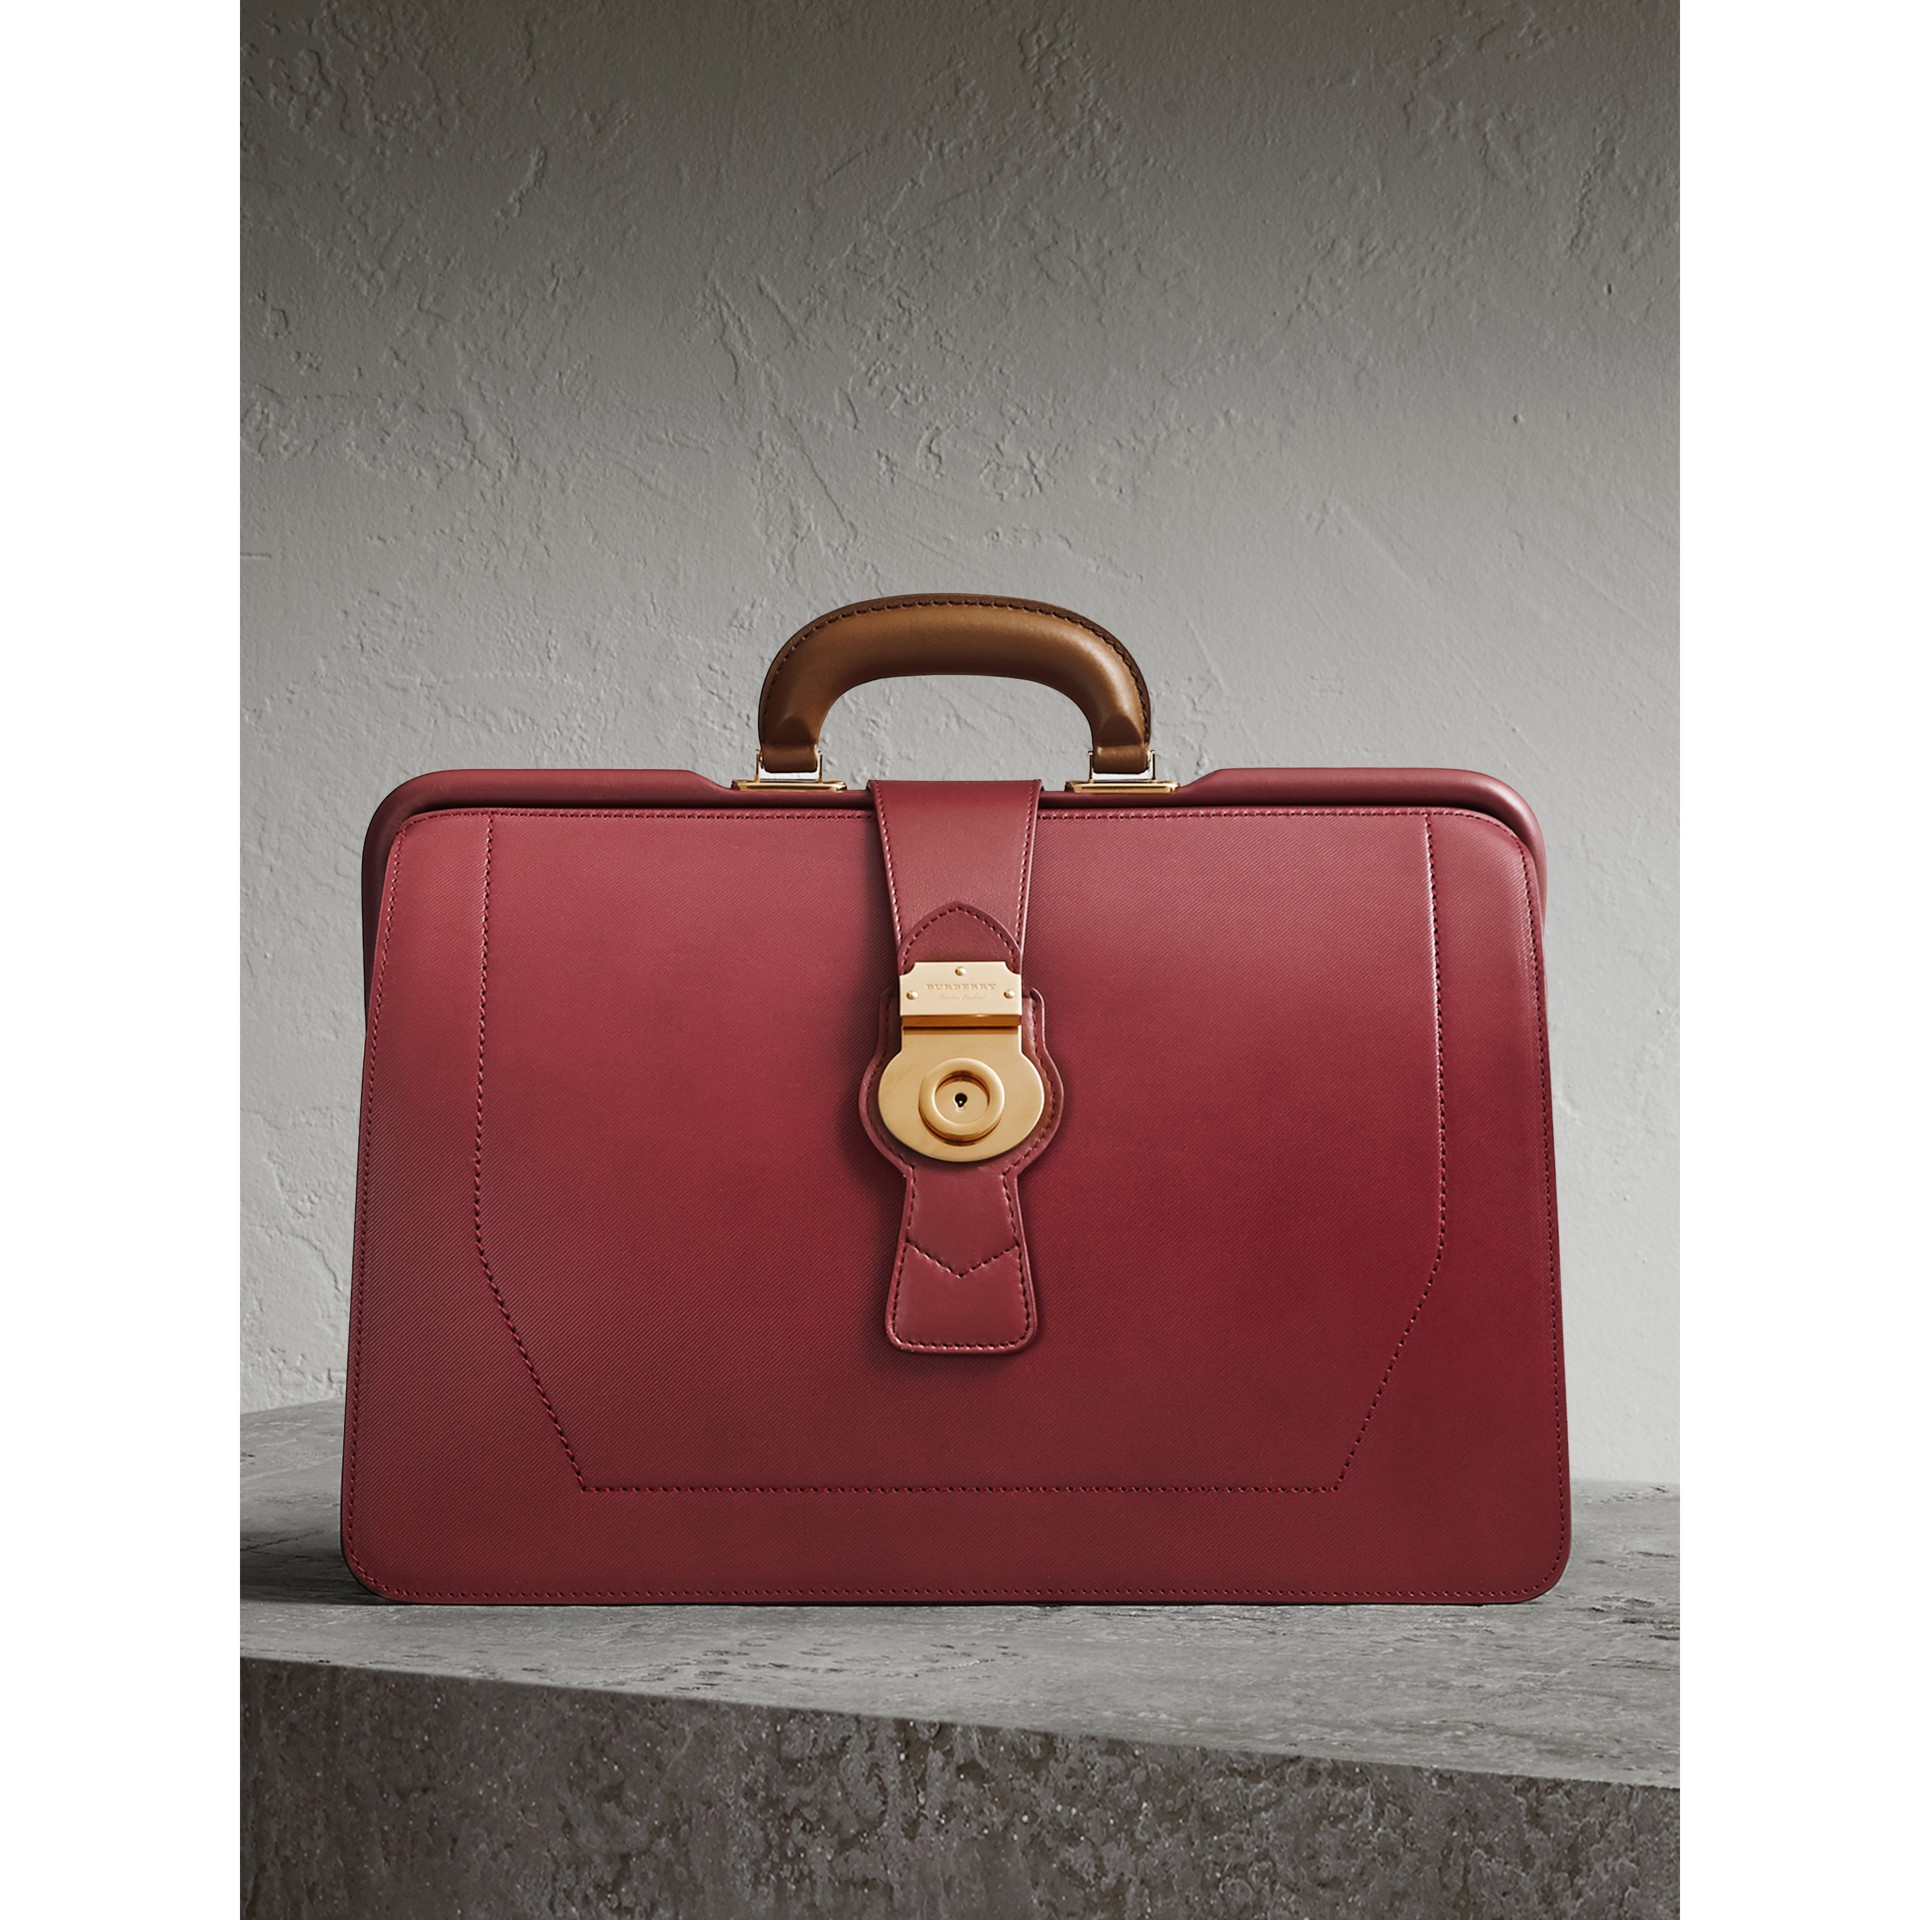 tyk Prestigefyldte Kunstneriske Shop Burberry The Dk88 Doctor's Bag In Antique Red